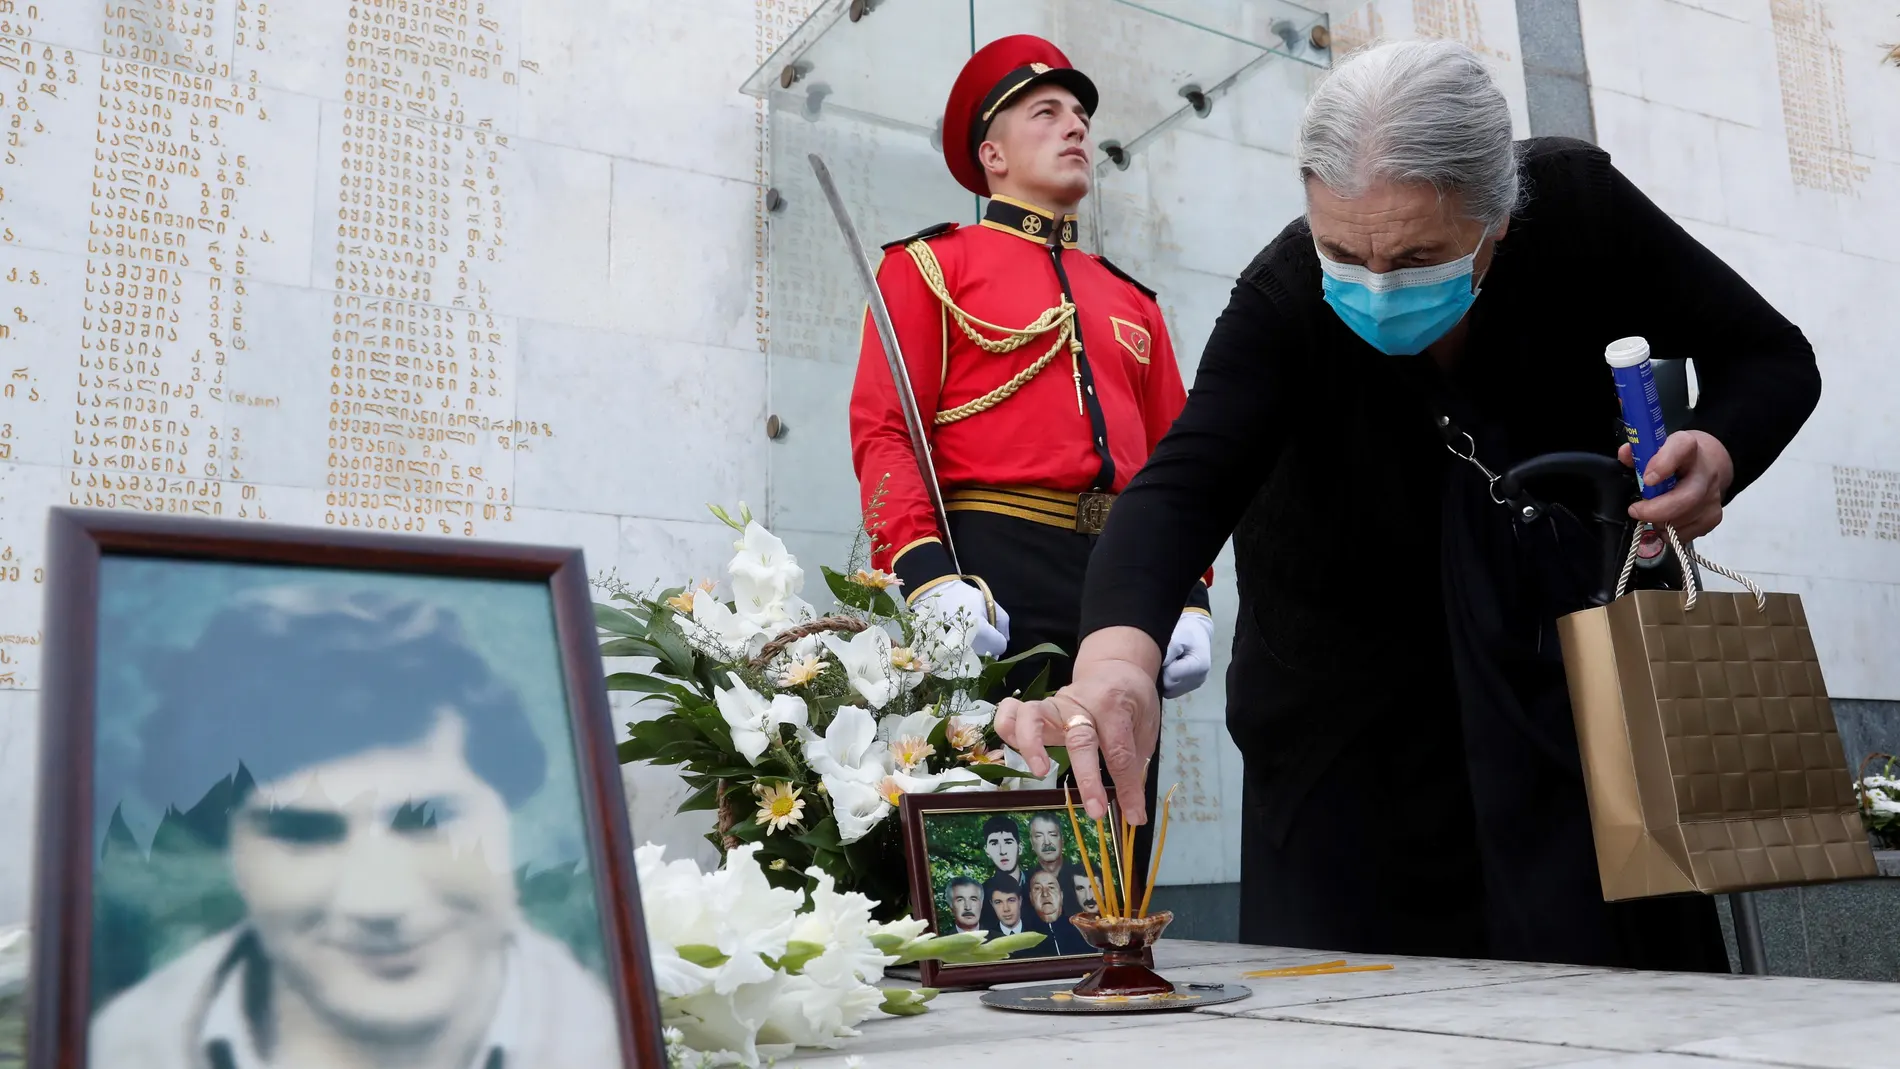 Una anciana coloca con cuidado objetos el monumento a los georgianos muertos durante el conflicto armado entre Georgia y Abjasia de 1992-1993